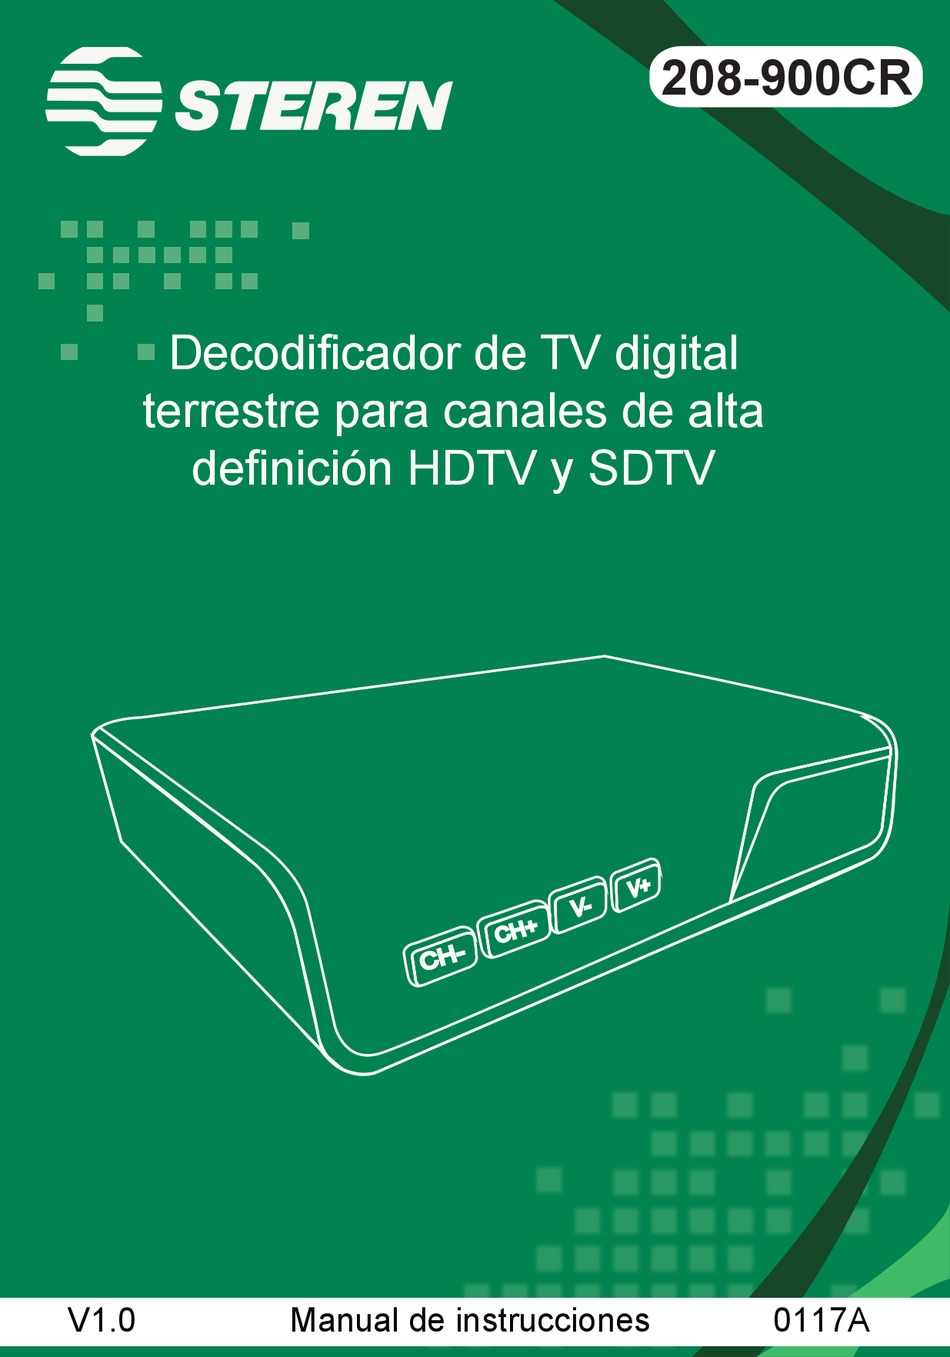 decodificador de tv steren digital alta definicin para canales hd [ 208-900  ] inicio